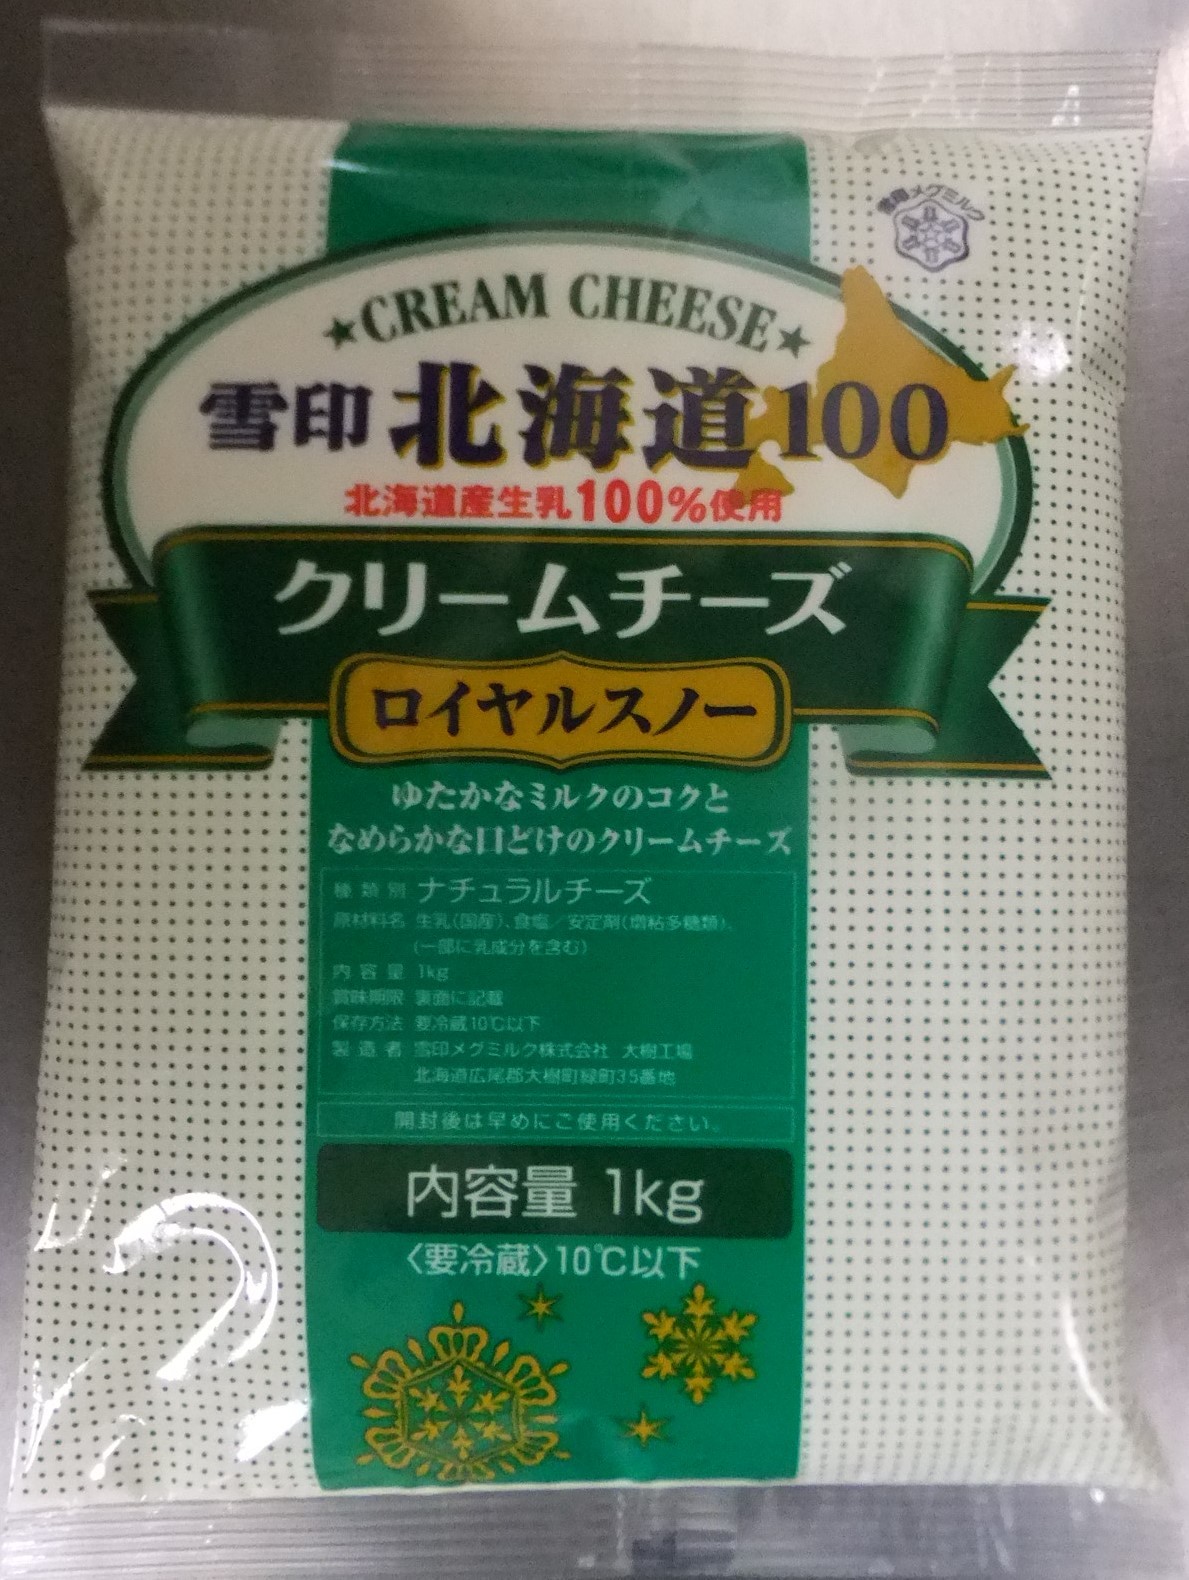 【冷蔵】《雪印》C1540北海道100 クリームチーズ ロイヤルスノー [1kg]